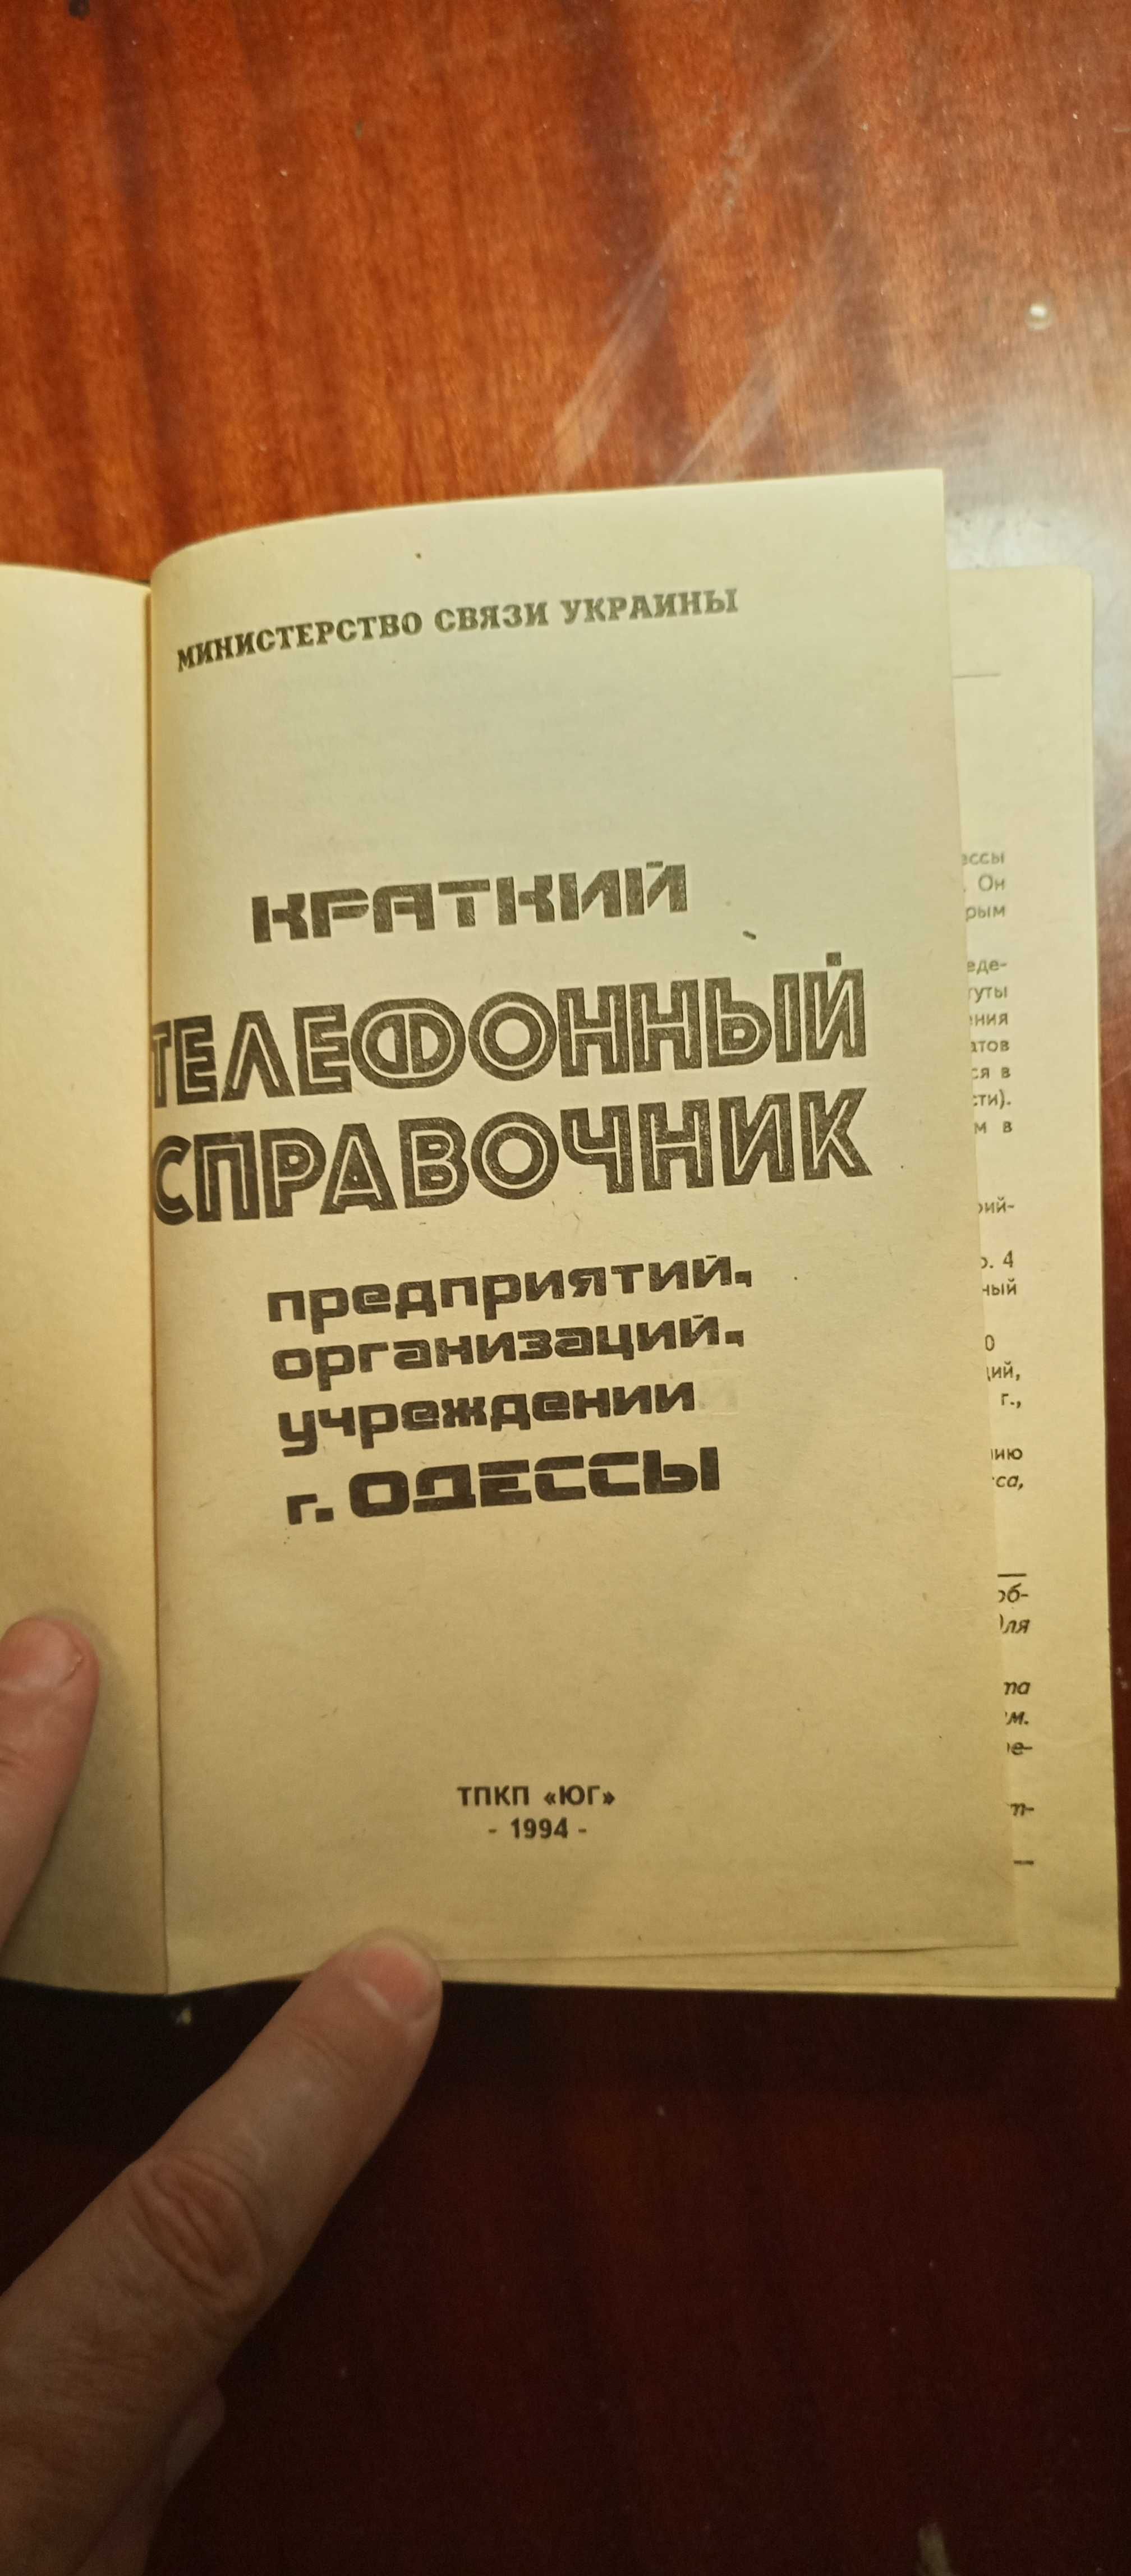 Телефонный справочник предприятий, организаций, учреждений Одессы 1994